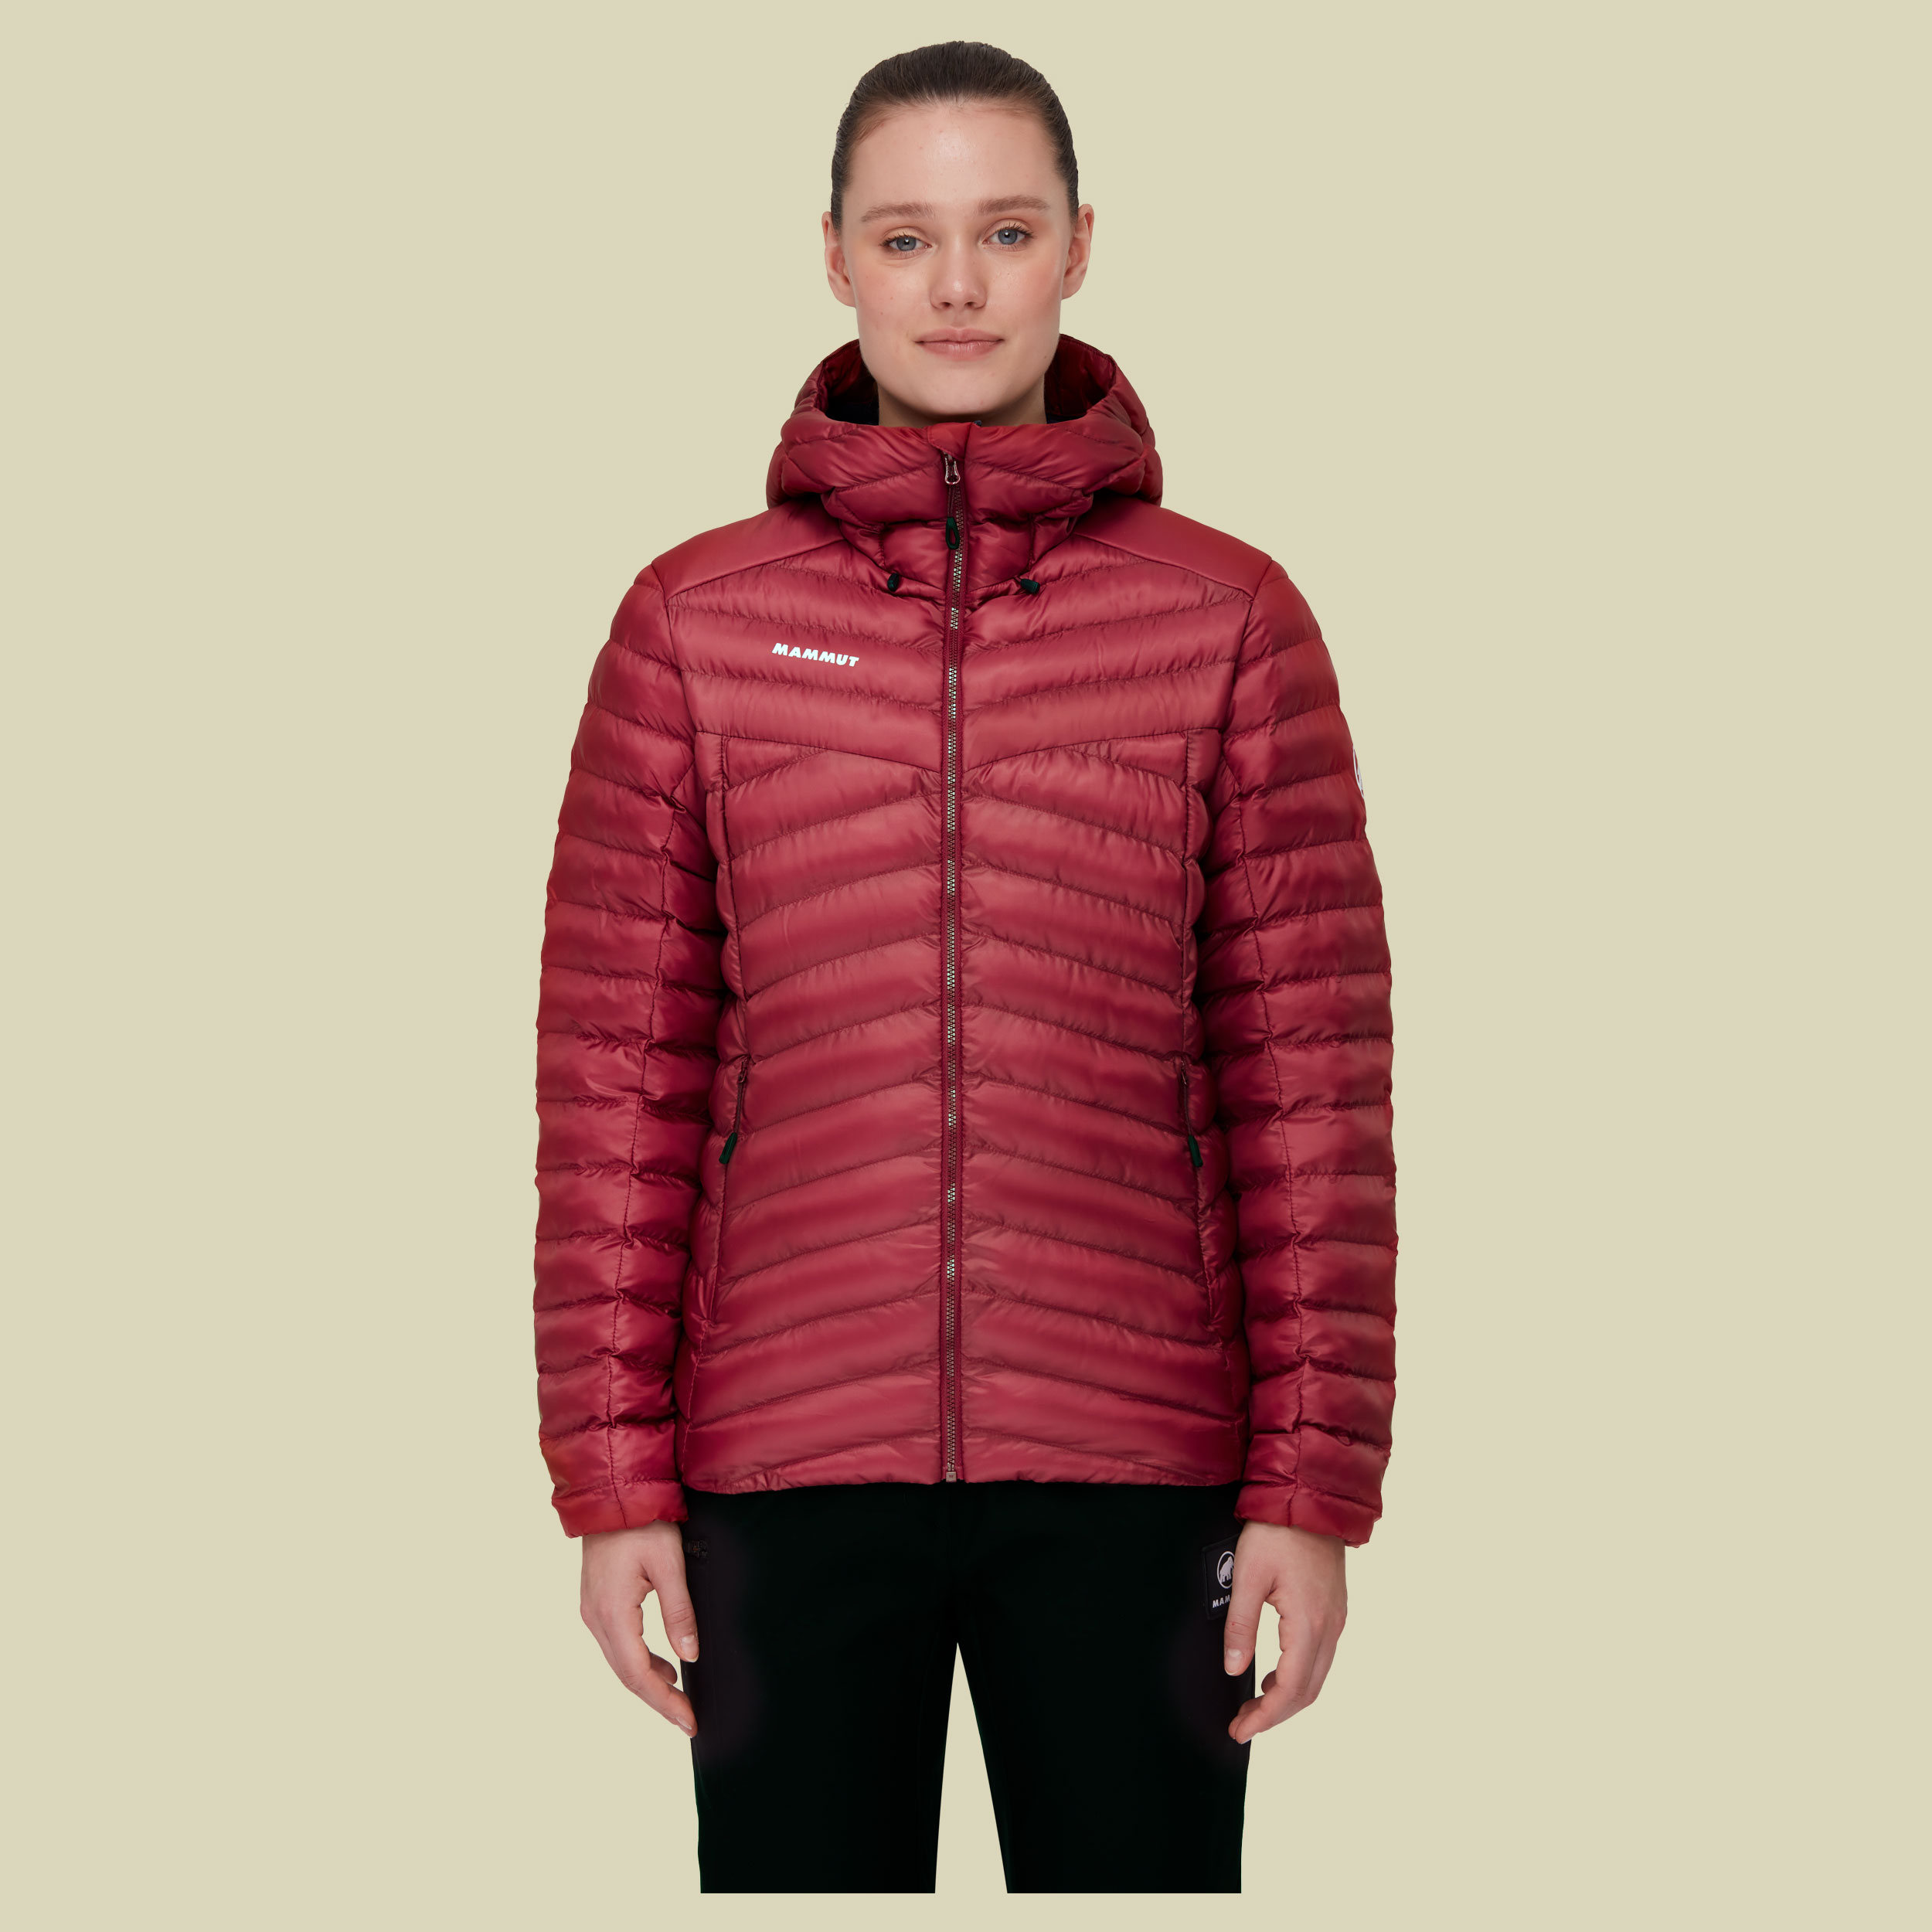 Albula IN Hooded Jacket Women 1013-01791 Größe XS Farbe blood red